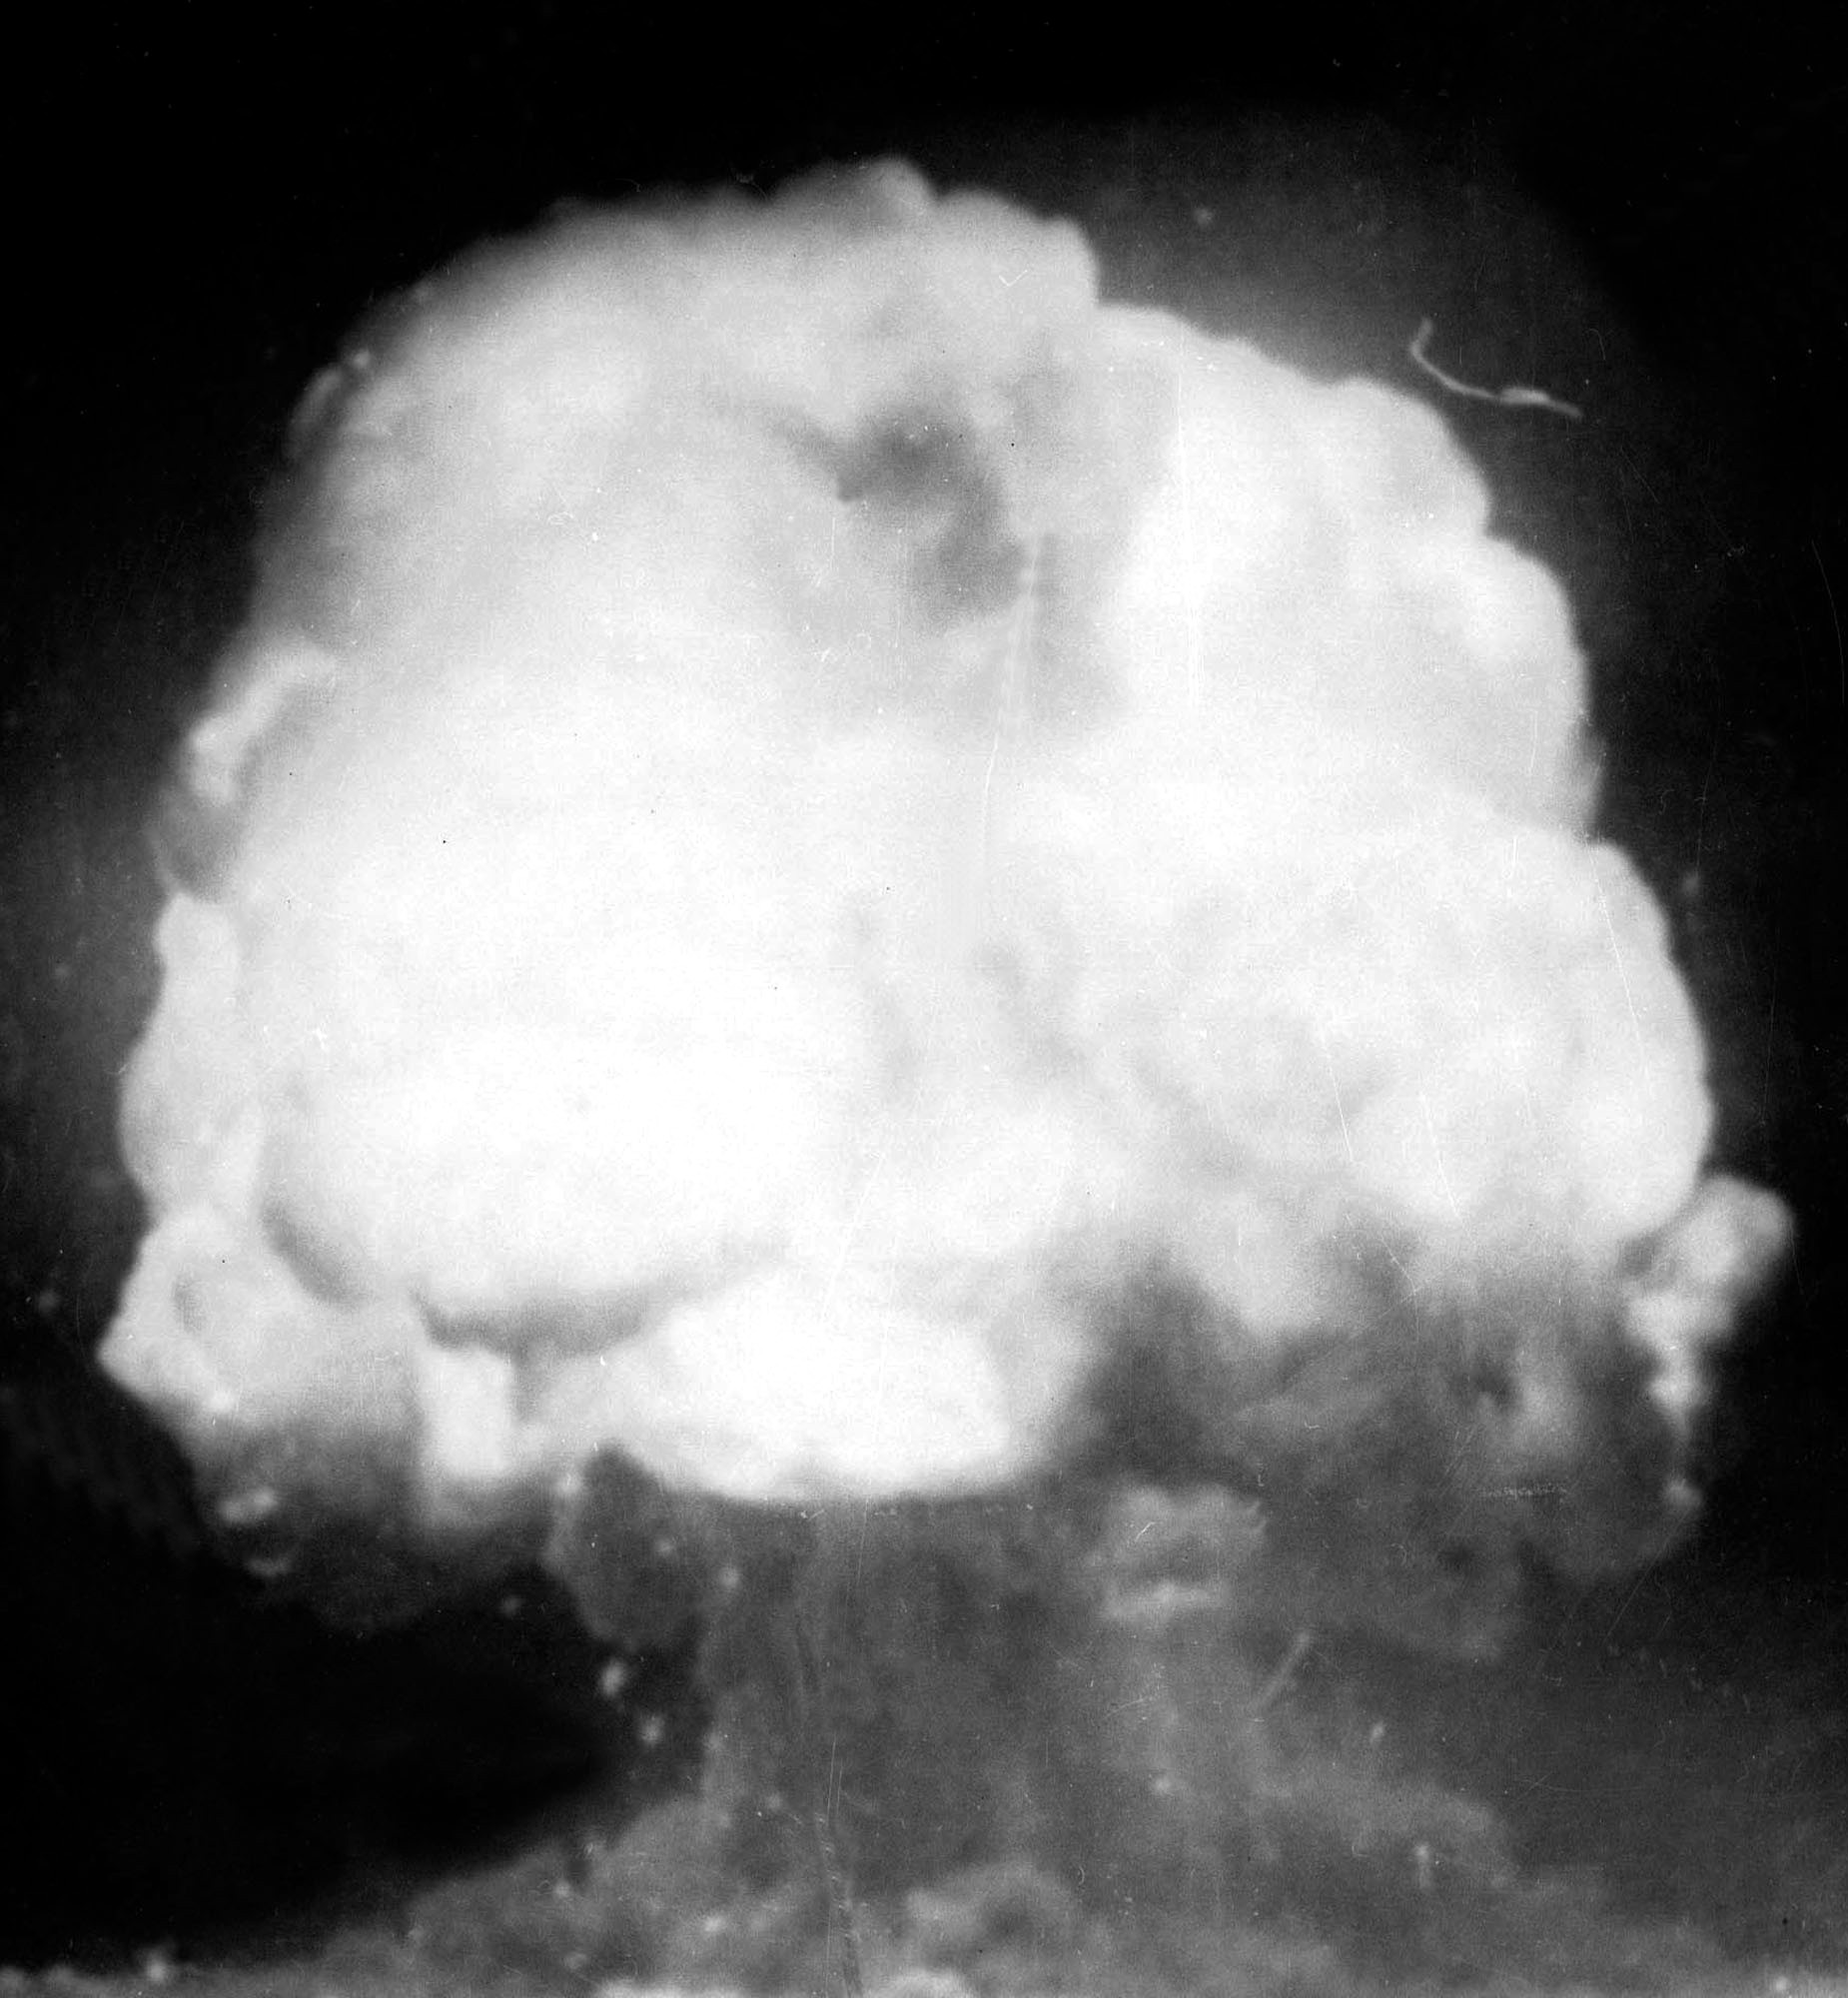 Kivégezték volna a tudós elvtársakat, ha nem jön össze a szovjet atombomba